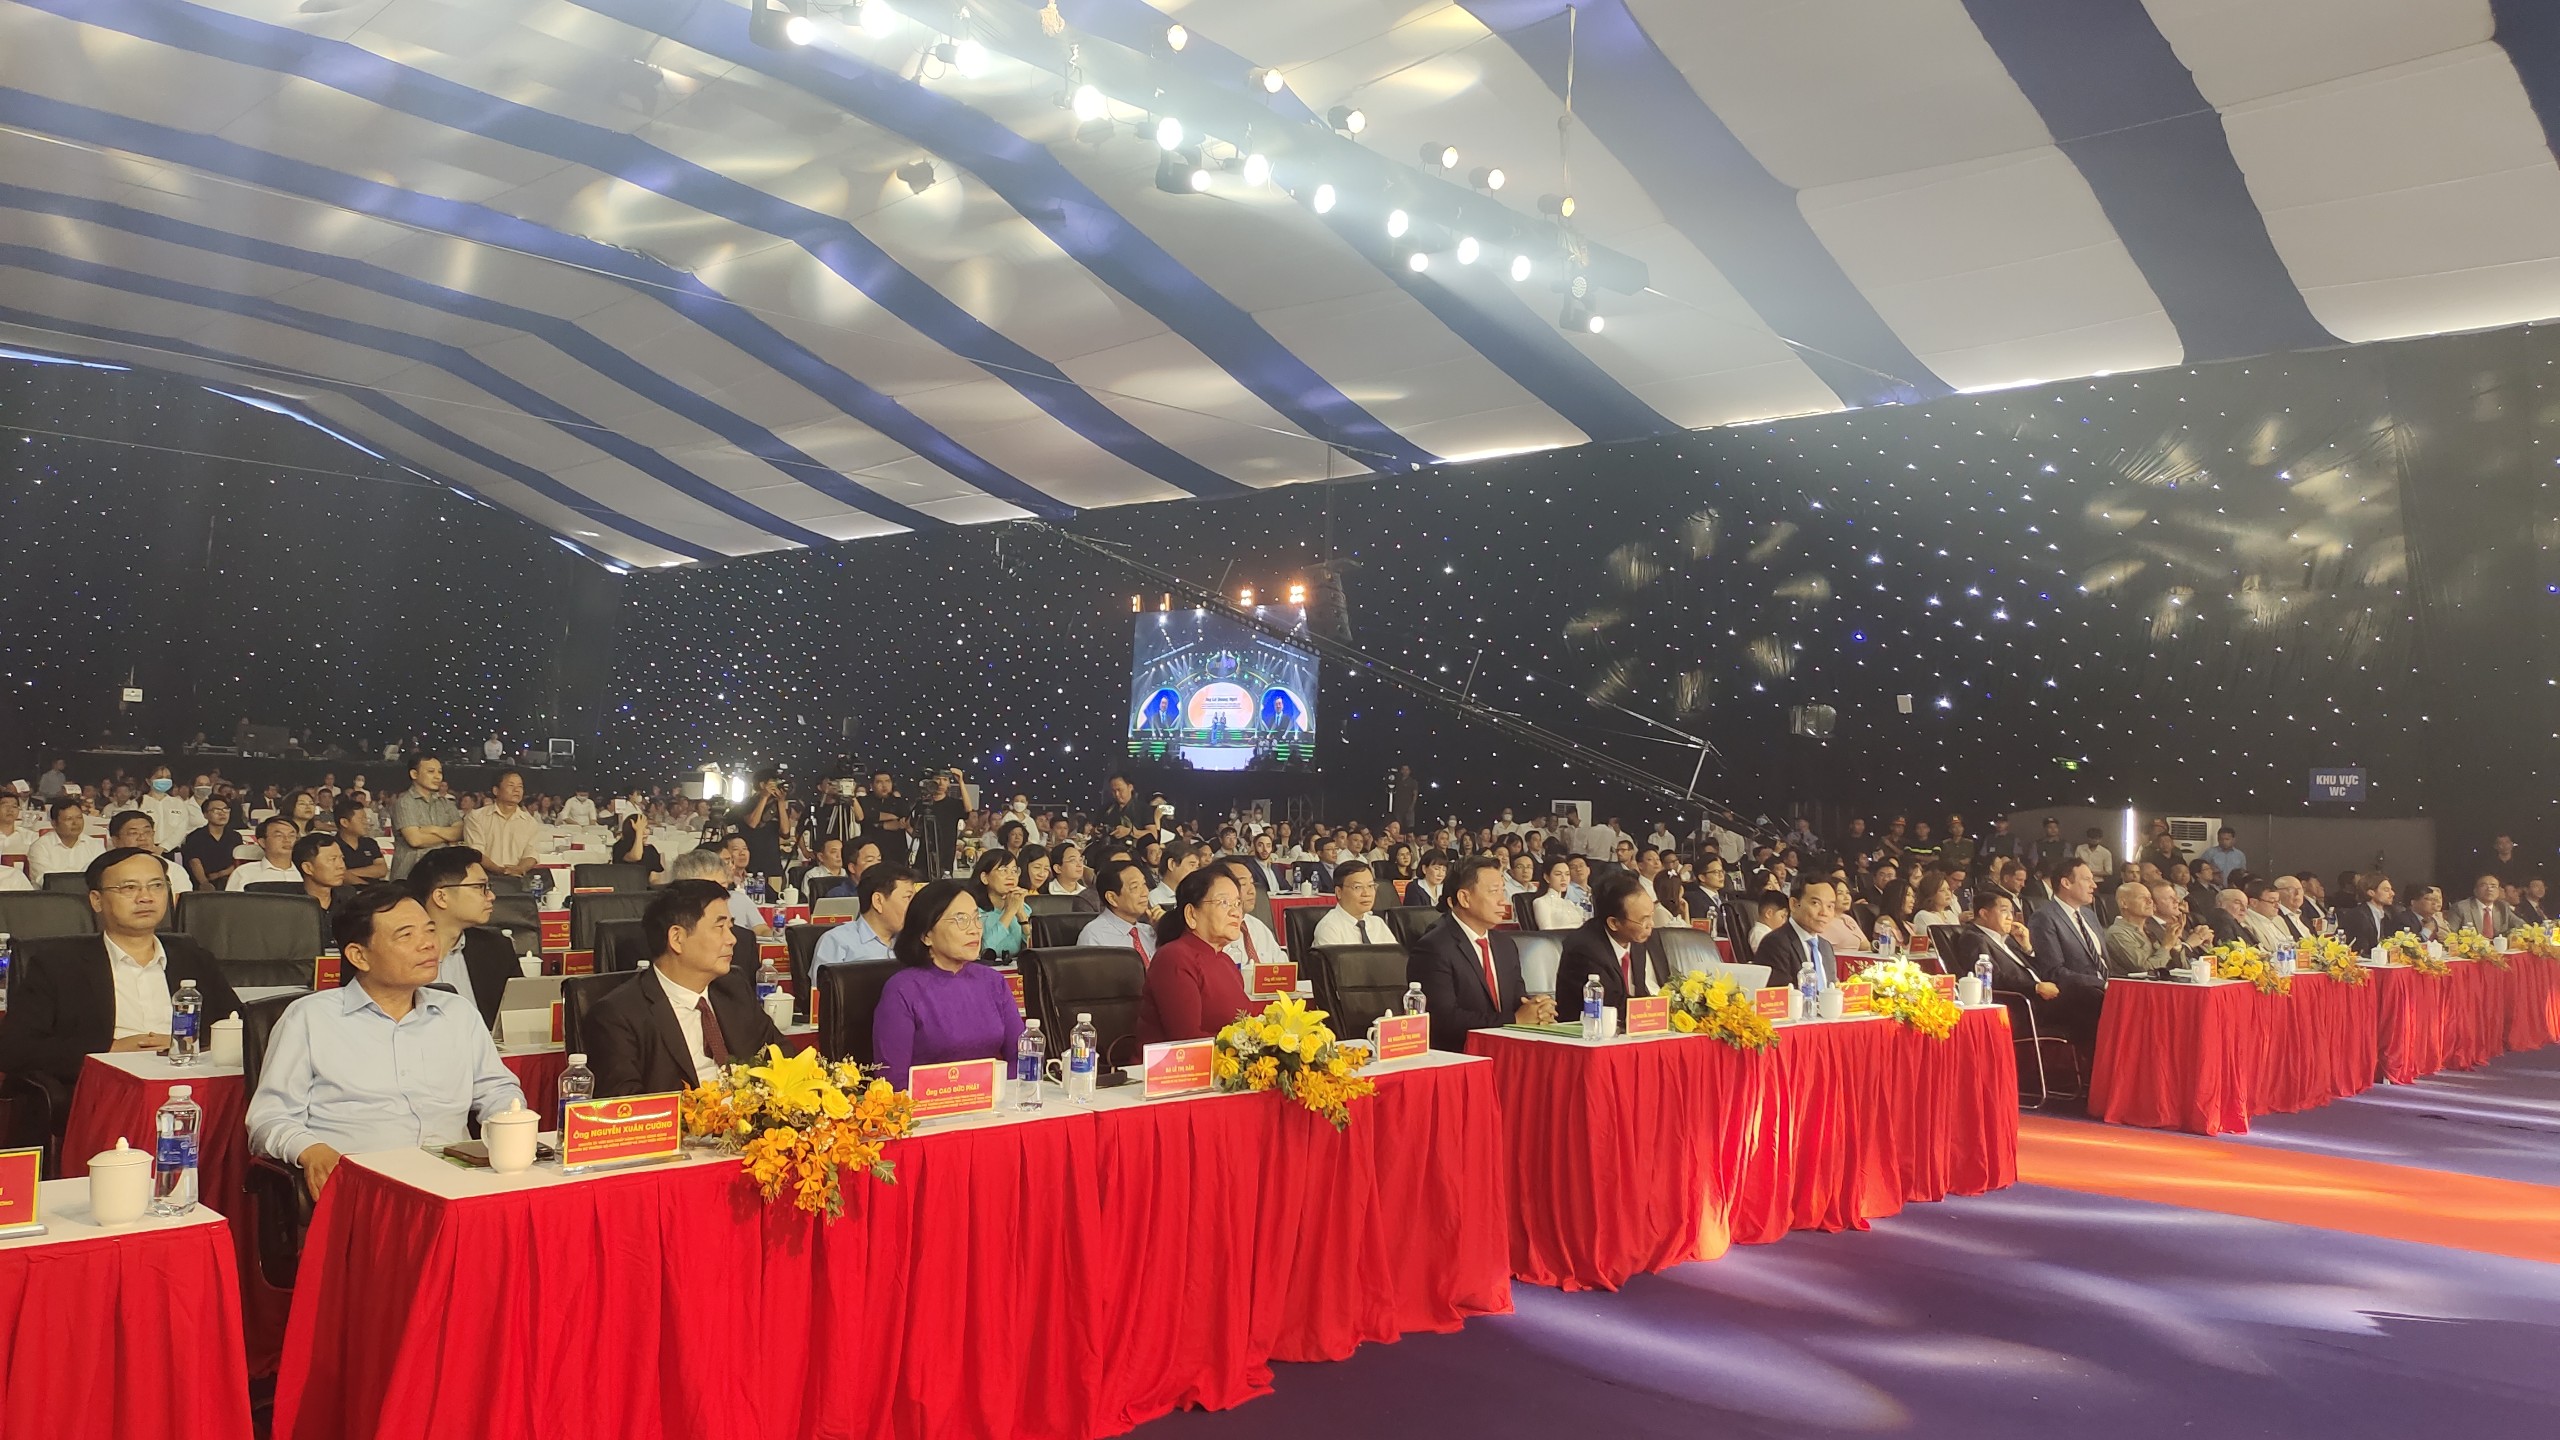 Tây Ninh khánh thành Khu chăn nuôi công nghệ cao DHN, công bố 7 dự án trọng điểm vốn đầu tư 2.500 tỷ đồng- Ảnh 1.